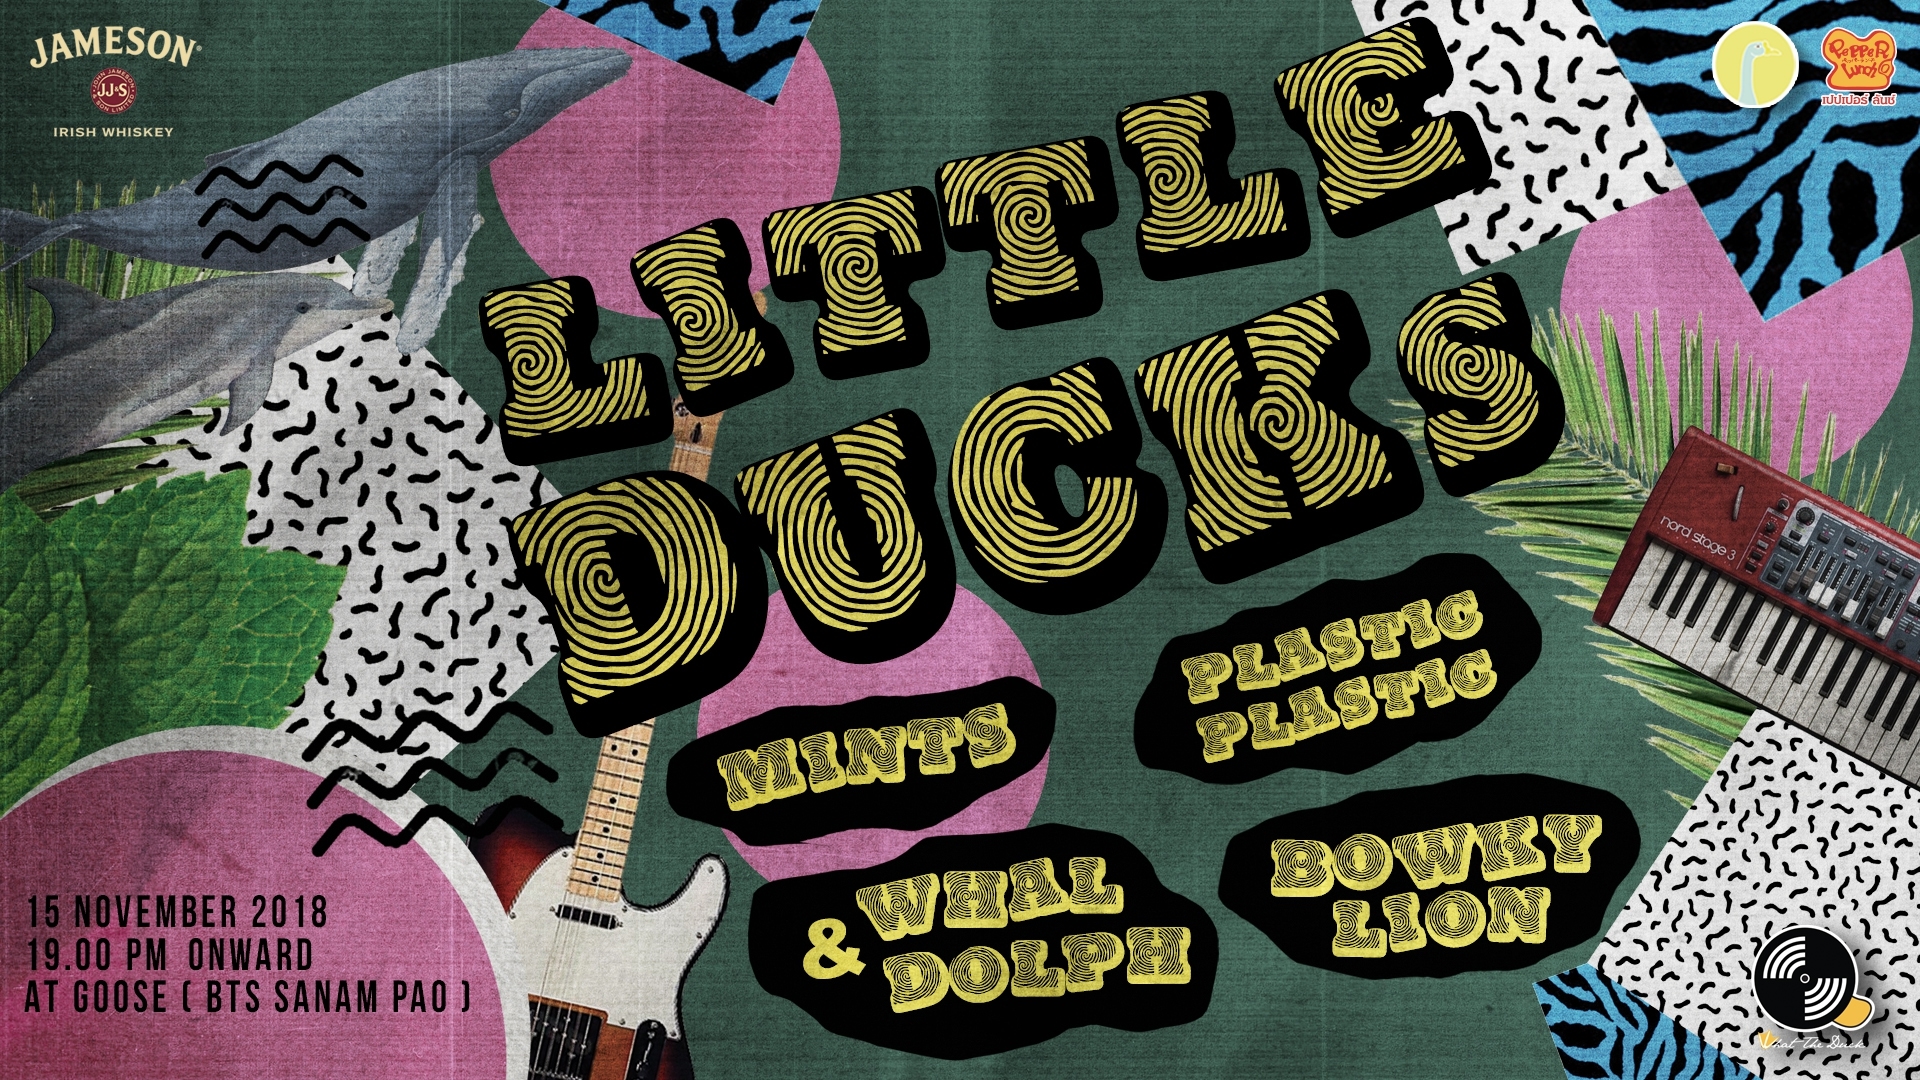 What The Duck จัดงานปาร์ตี้ครั้งใหม่ LITTLE DUCKS เตรียมชู 4 ศิลปินเลือดใหม่ประดับวงการเพลงในปี 2019